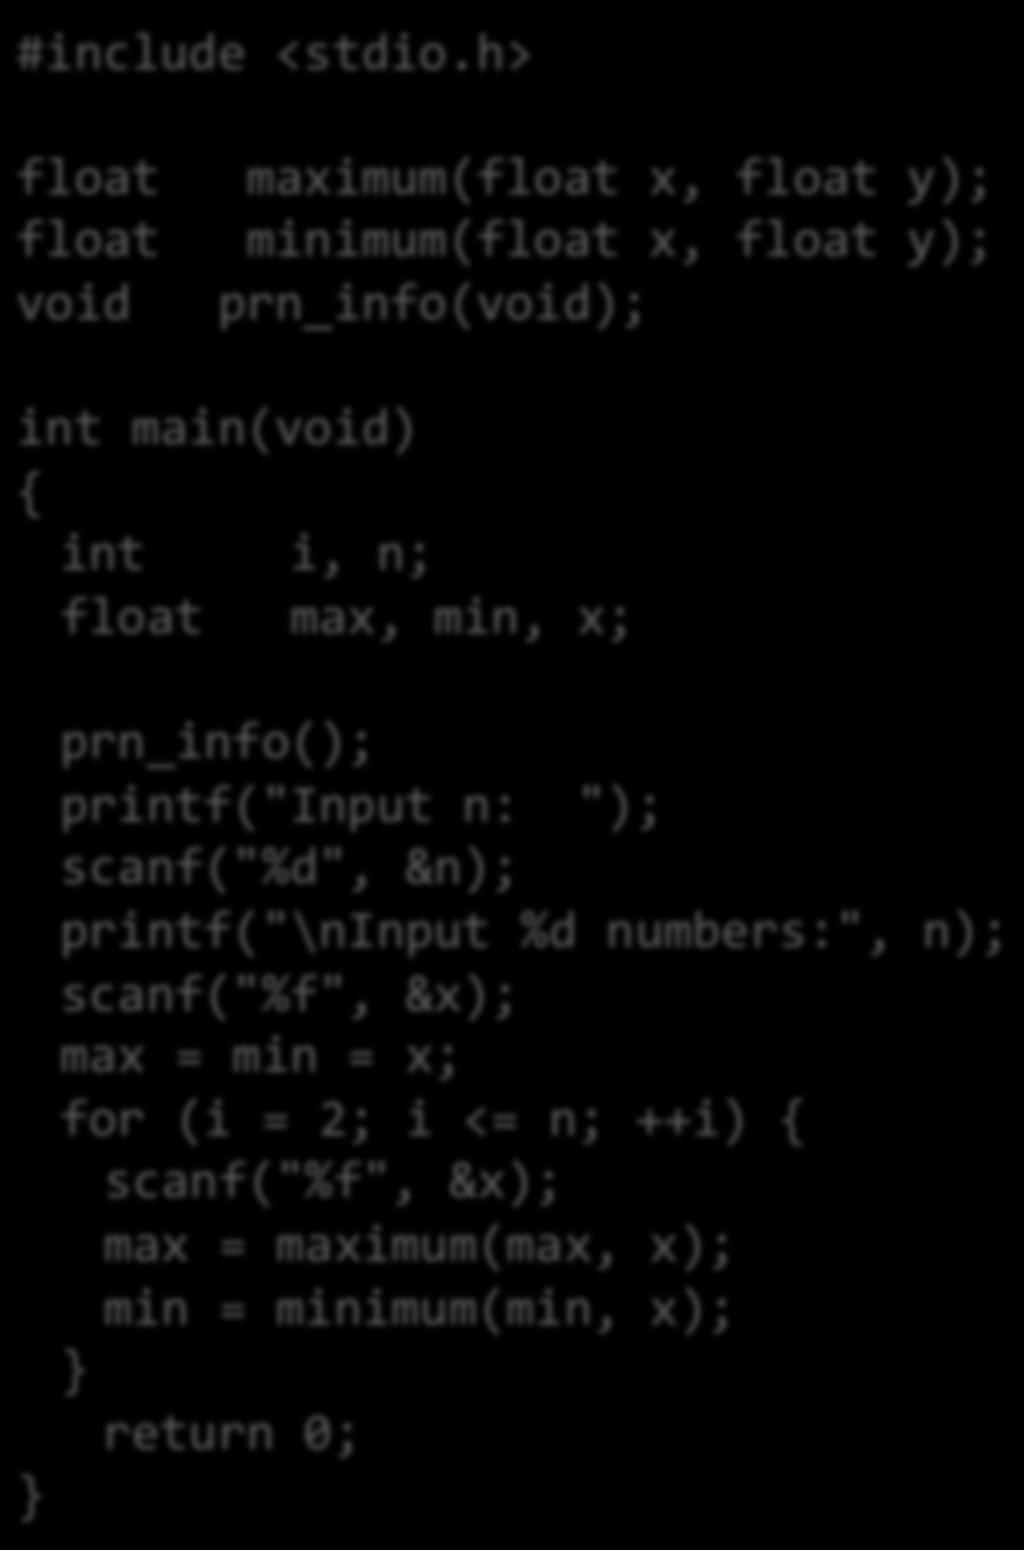 i, n; float max, min, x; prn_info(); printf("input n: "); scanf("%d", &n); printf("\ninput %d numbers:", n);